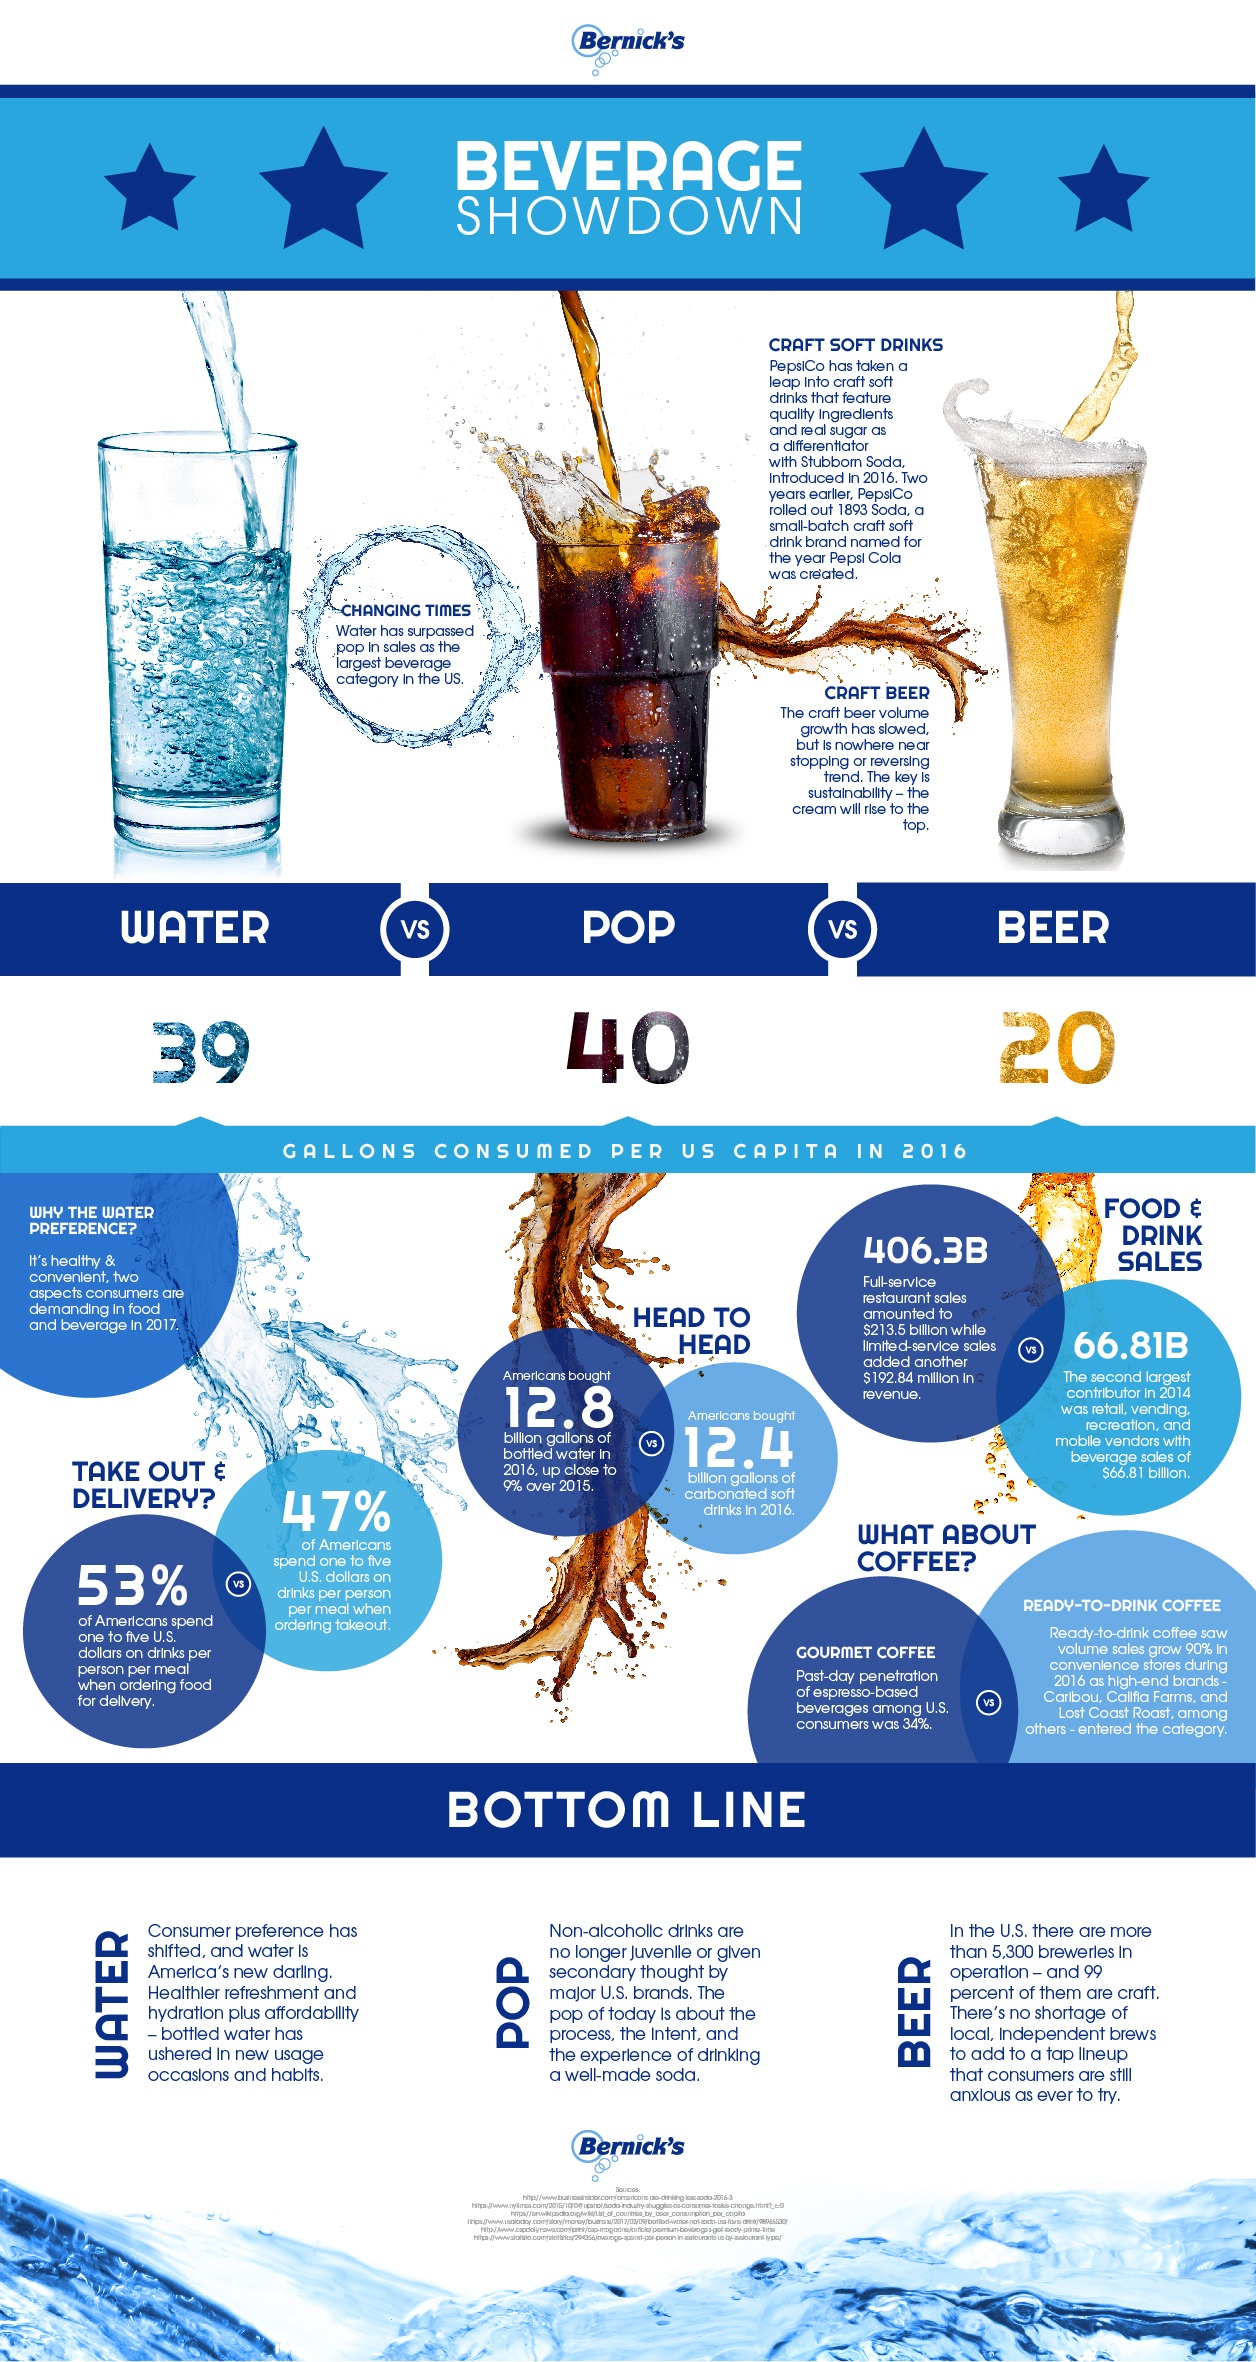 beverage showdown infographic